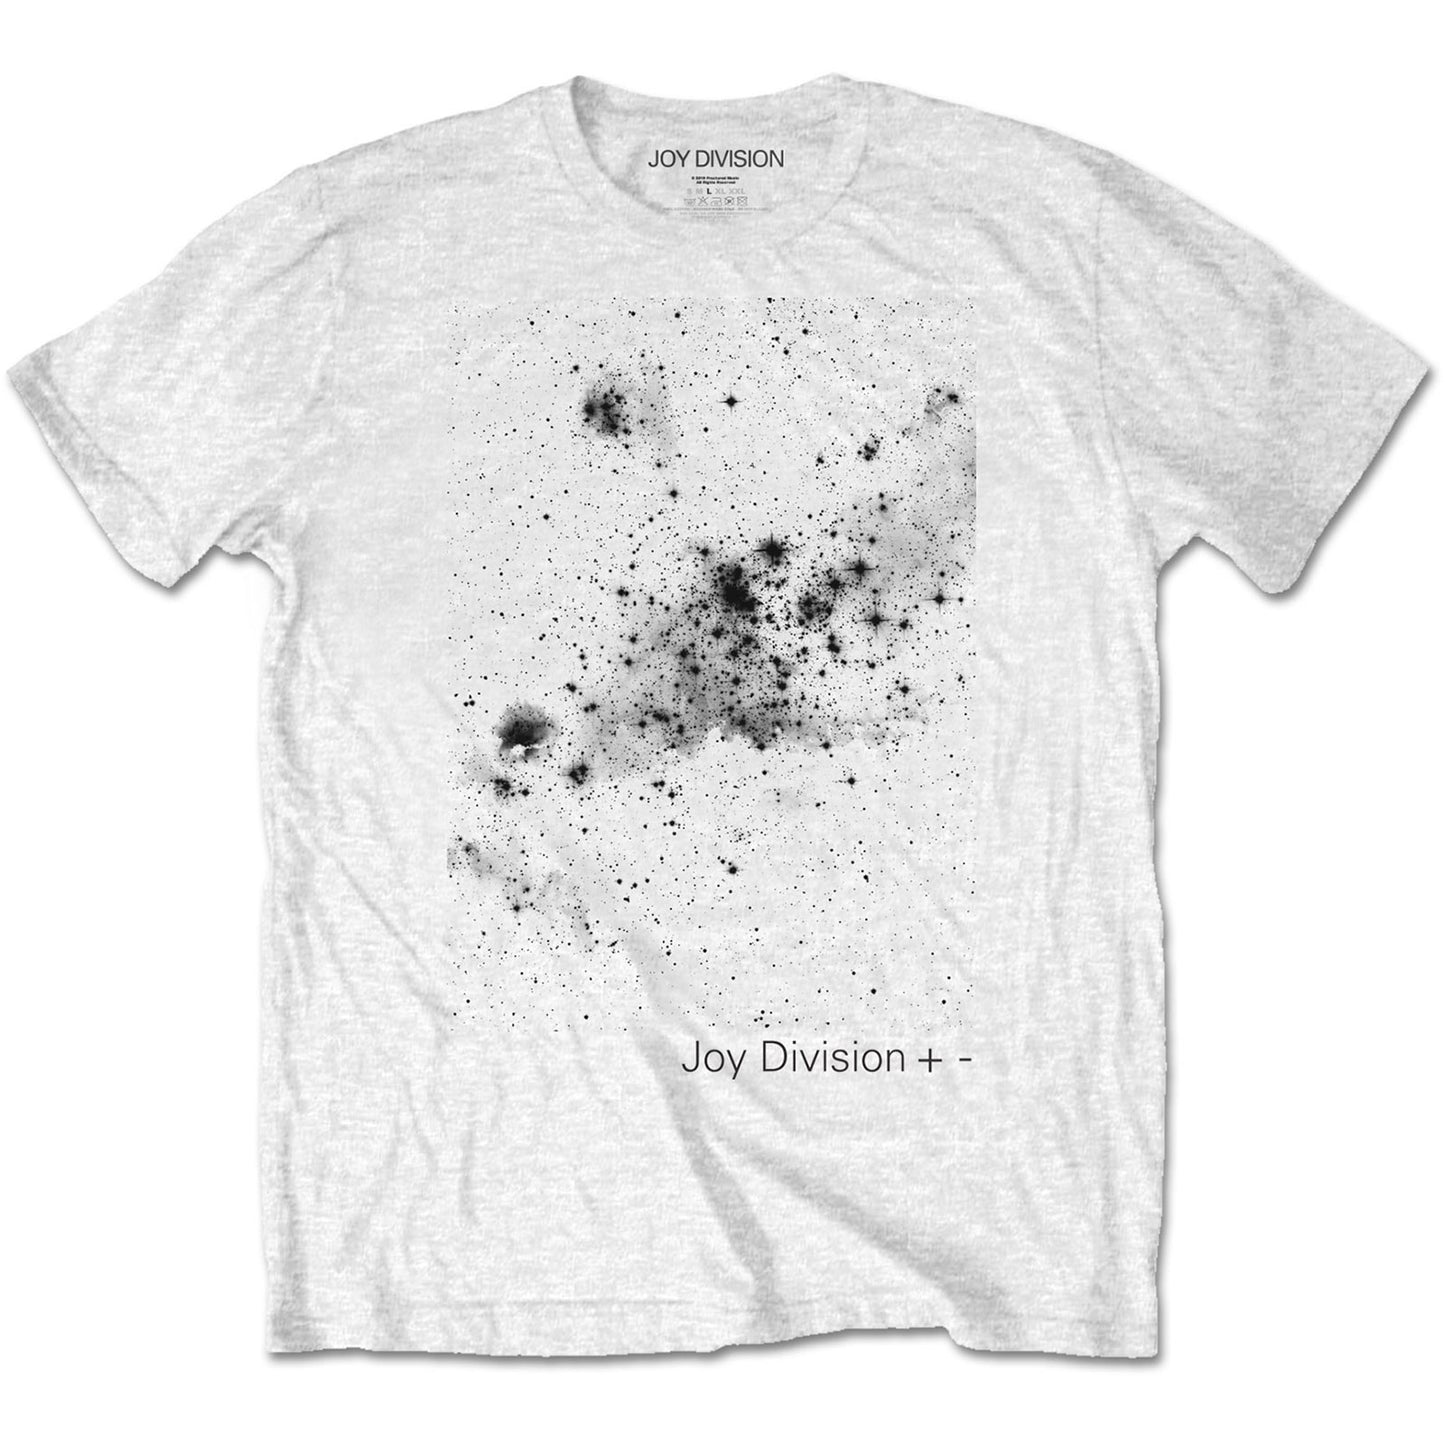 Joy Division T-Shirt: Plus/Minus